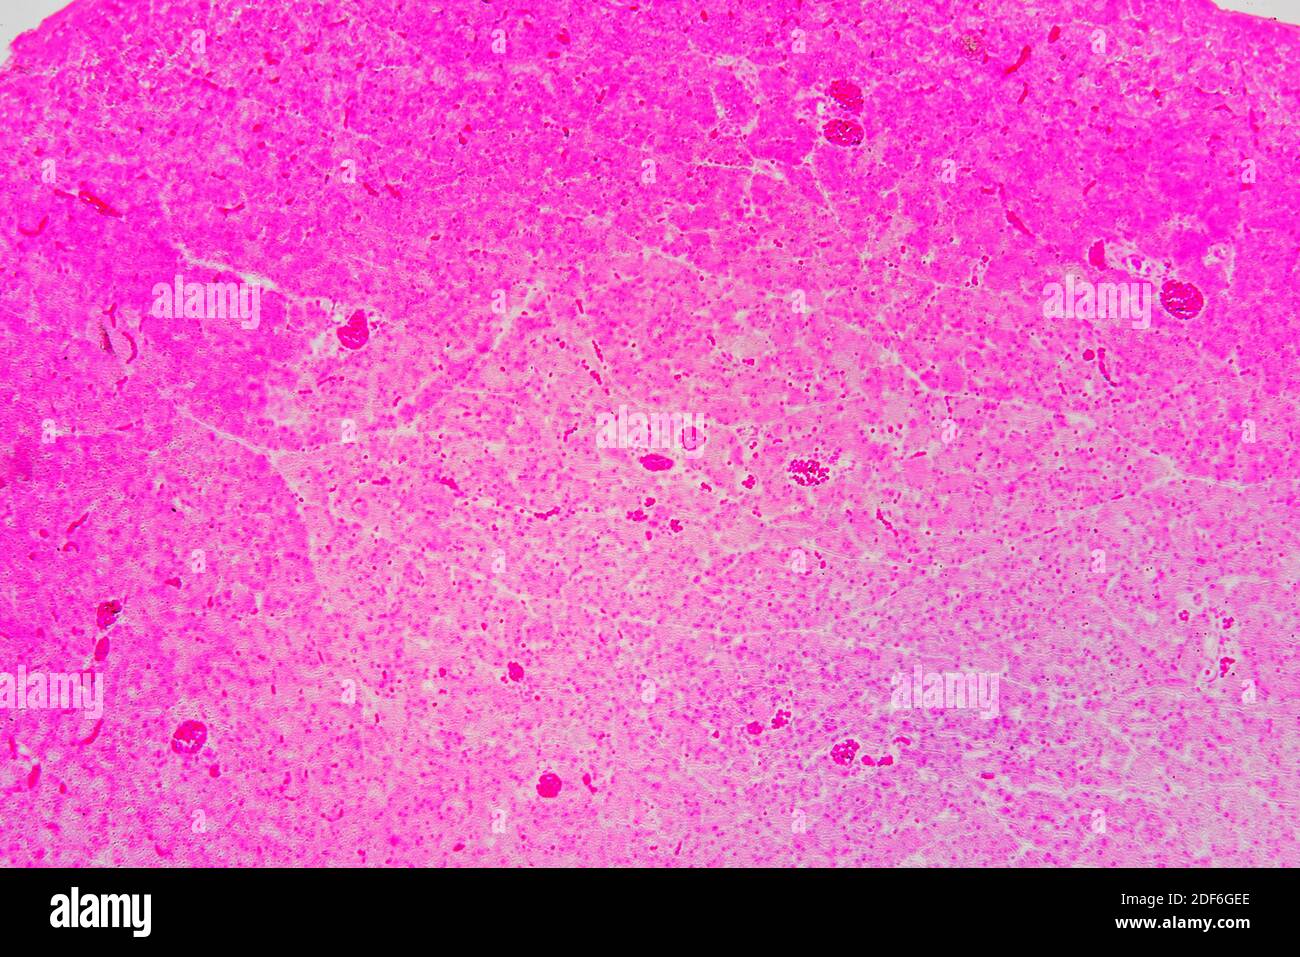 Menschliche Bauchspeicheldrüse mit Diabetes mellitus Typ 1 mit acin und Langerhans-Inseln. Optisches Mikroskop X100. Stockfoto